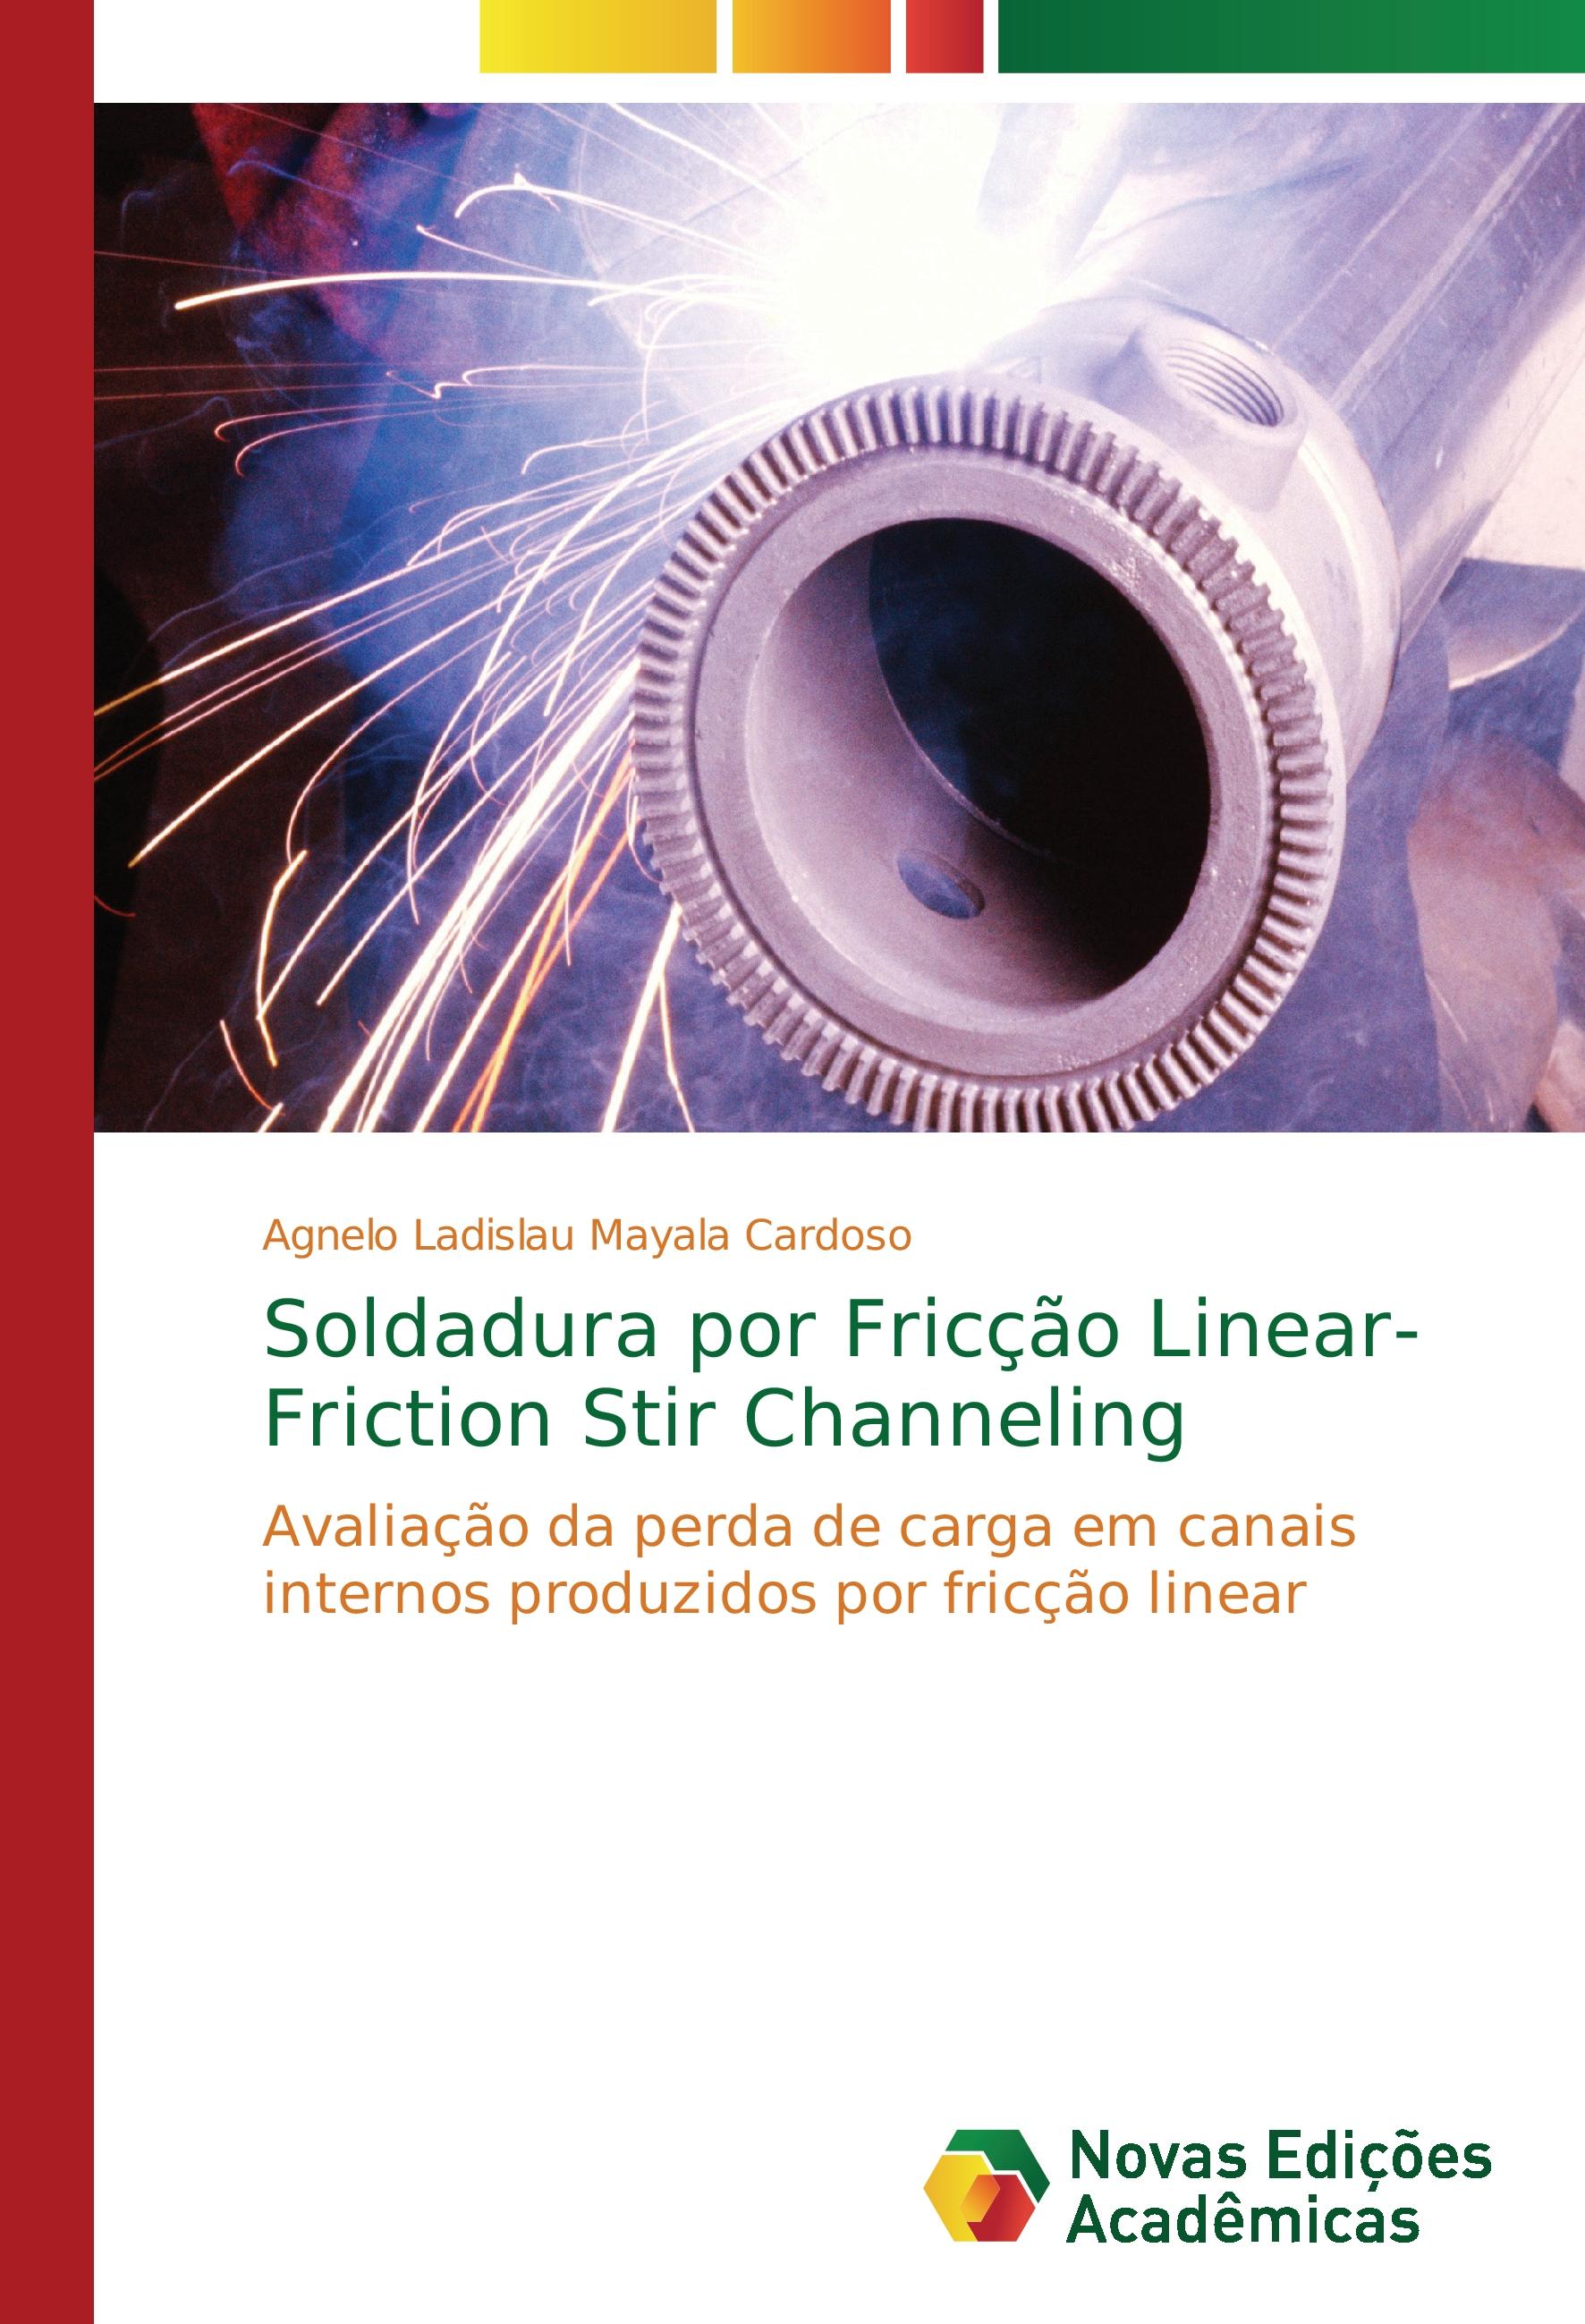 Soldadura por Fricção Linear- Friction Stir Channeling - Mayala Cardoso, Agnelo Ladislau